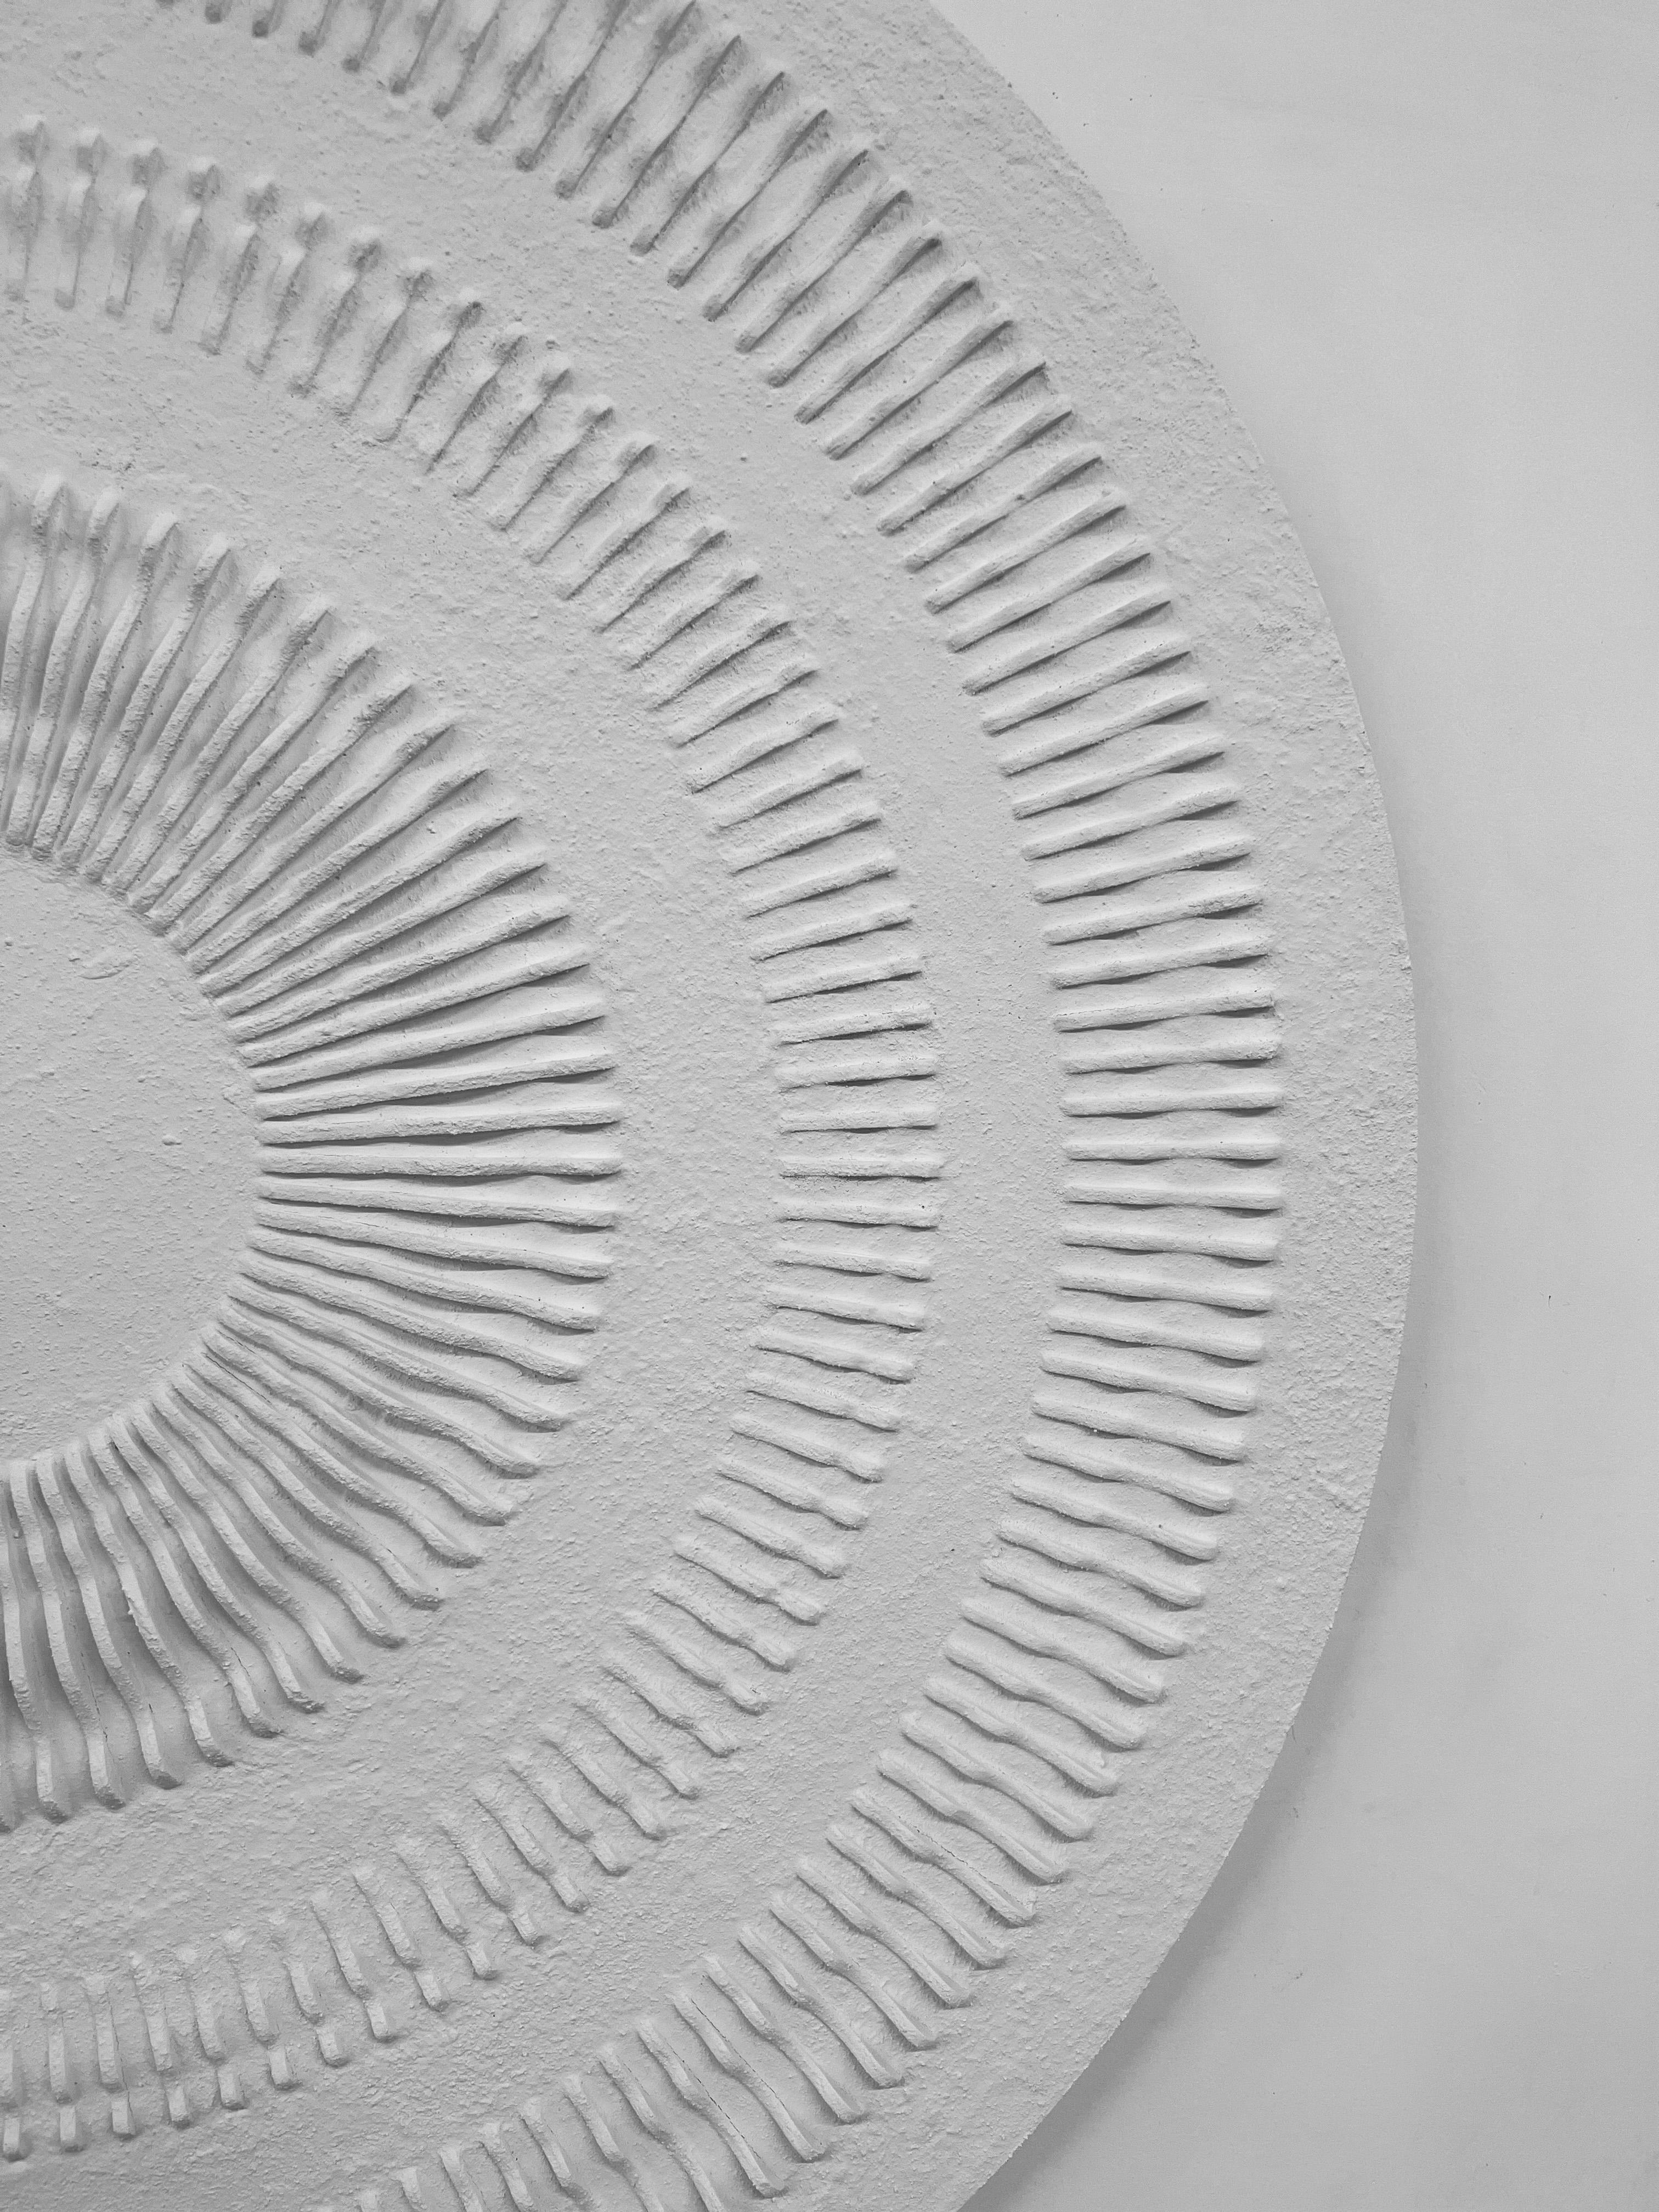 Magnifique circonférence blanche abstraite en 3D  - Abstrait Painting par Arozarena De La Fuente